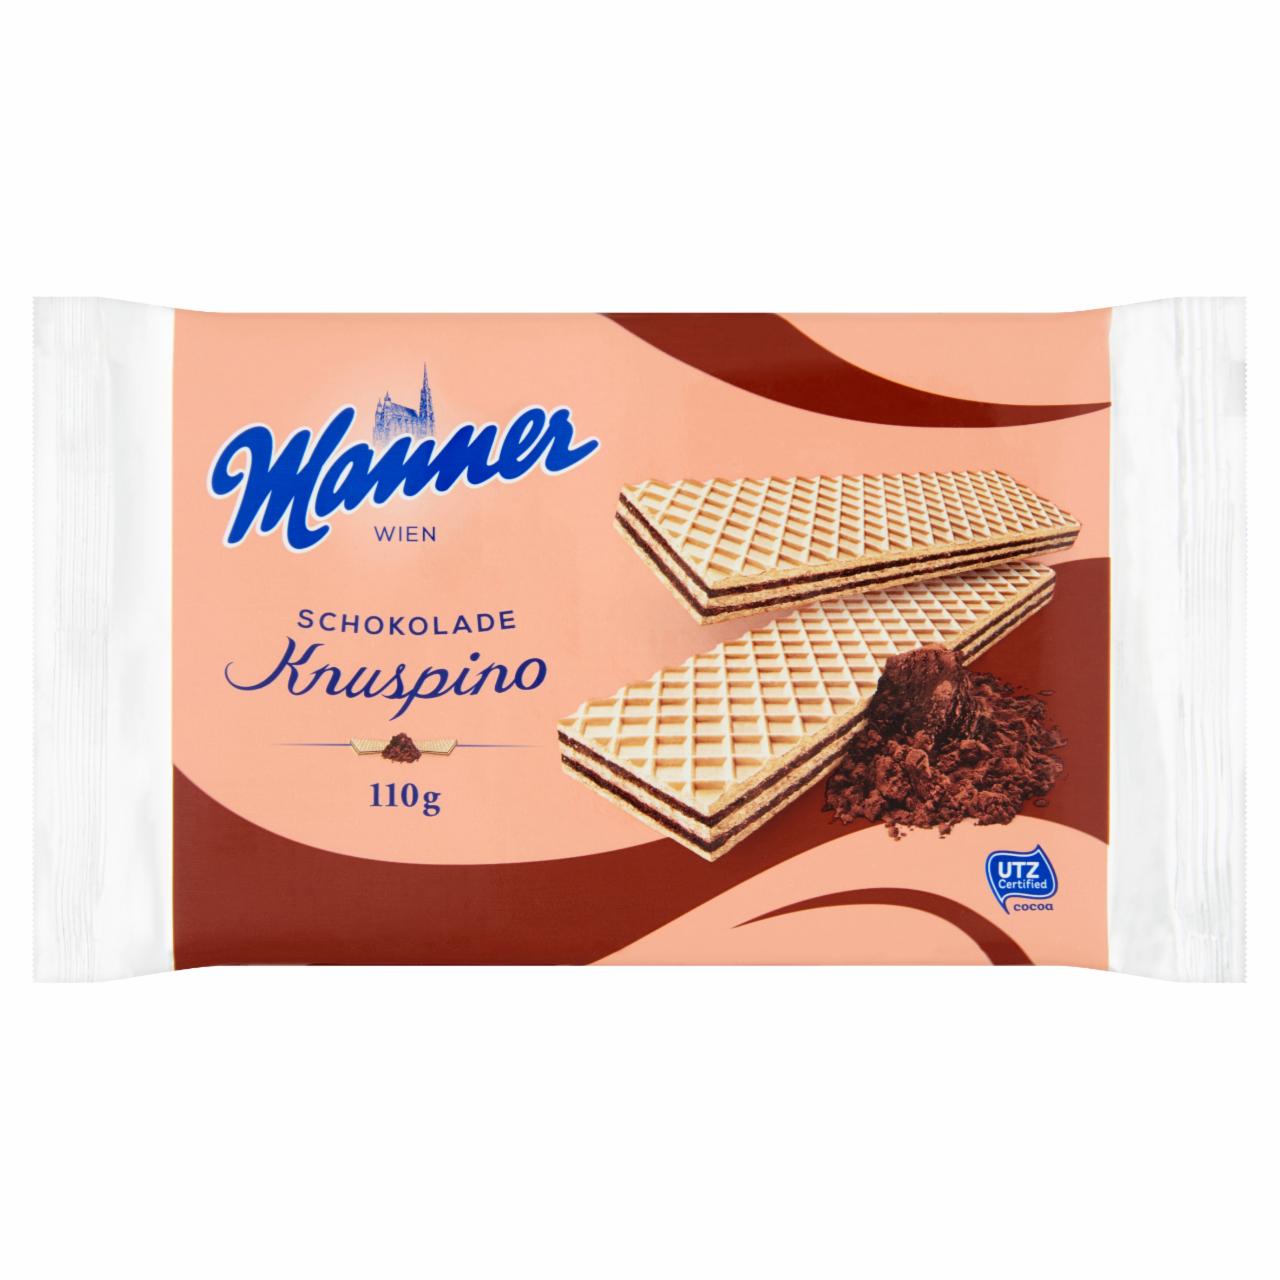 Képek - Manner Knuspino csokoládékrémmel töltött ostyaszeletek 110 g